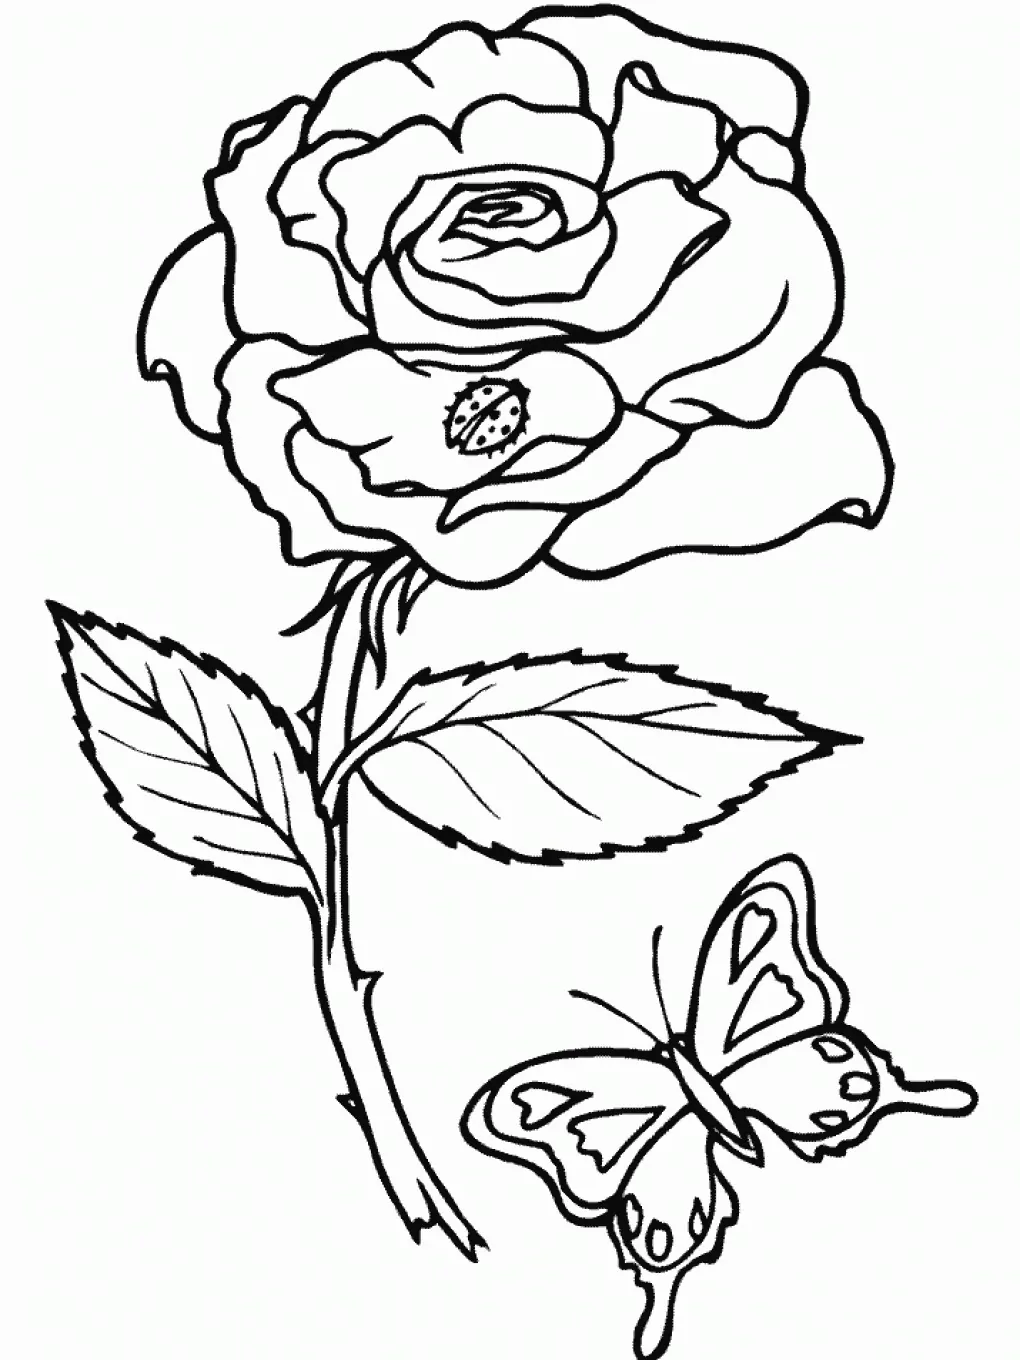 Rose und Schmetterling